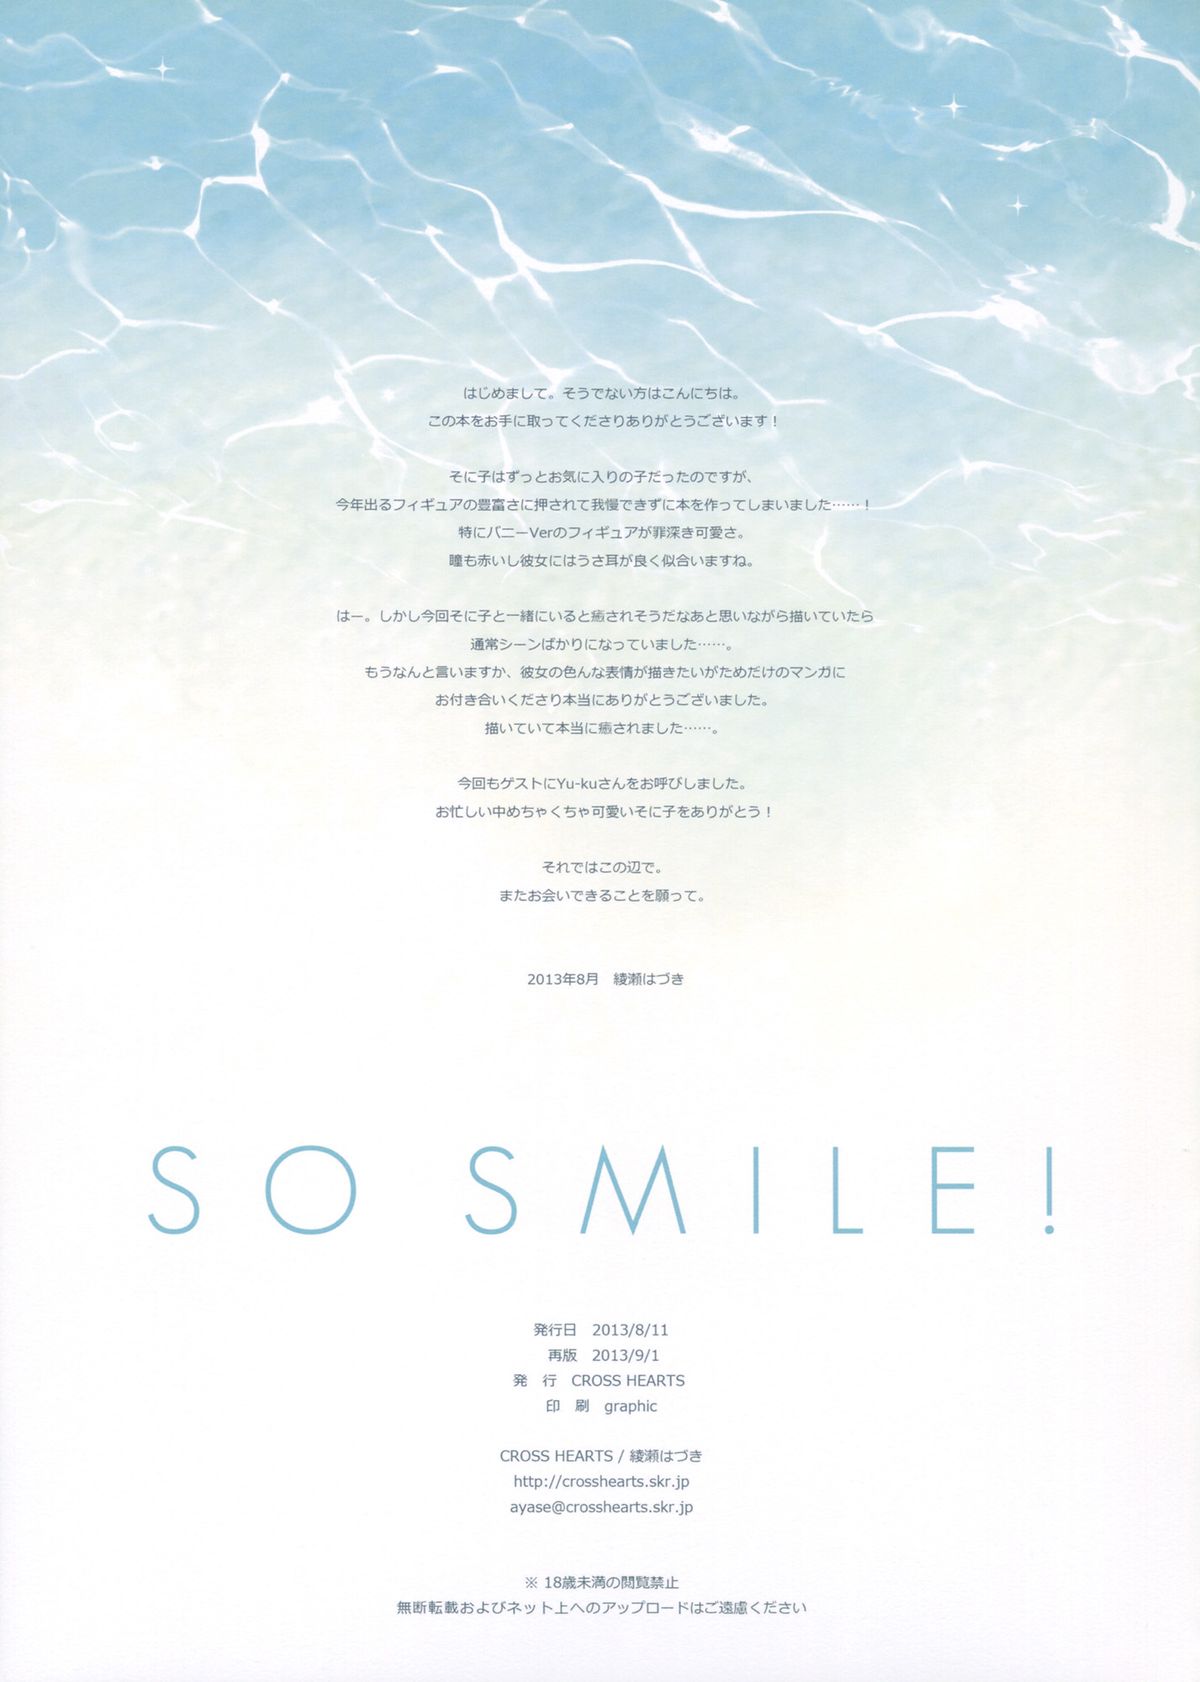 [CROSS HEARTS (綾瀬はづき)] SO SMILE! (すーぱーそに子) [2013年9月1日] [英訳]